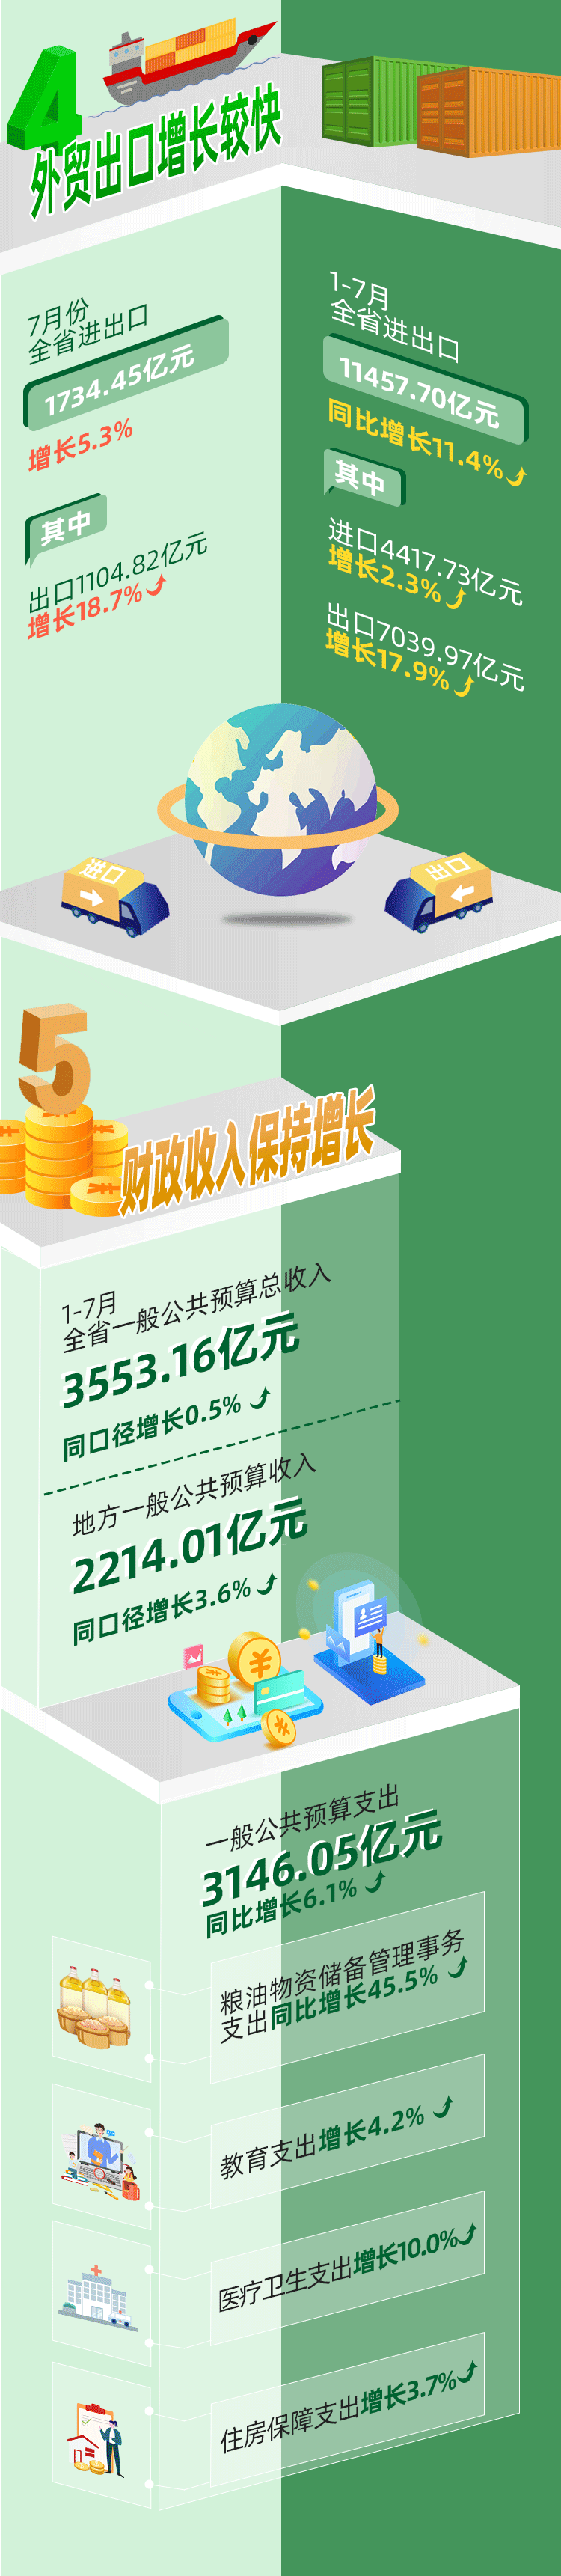 1-7月福建省经济运行情况发布